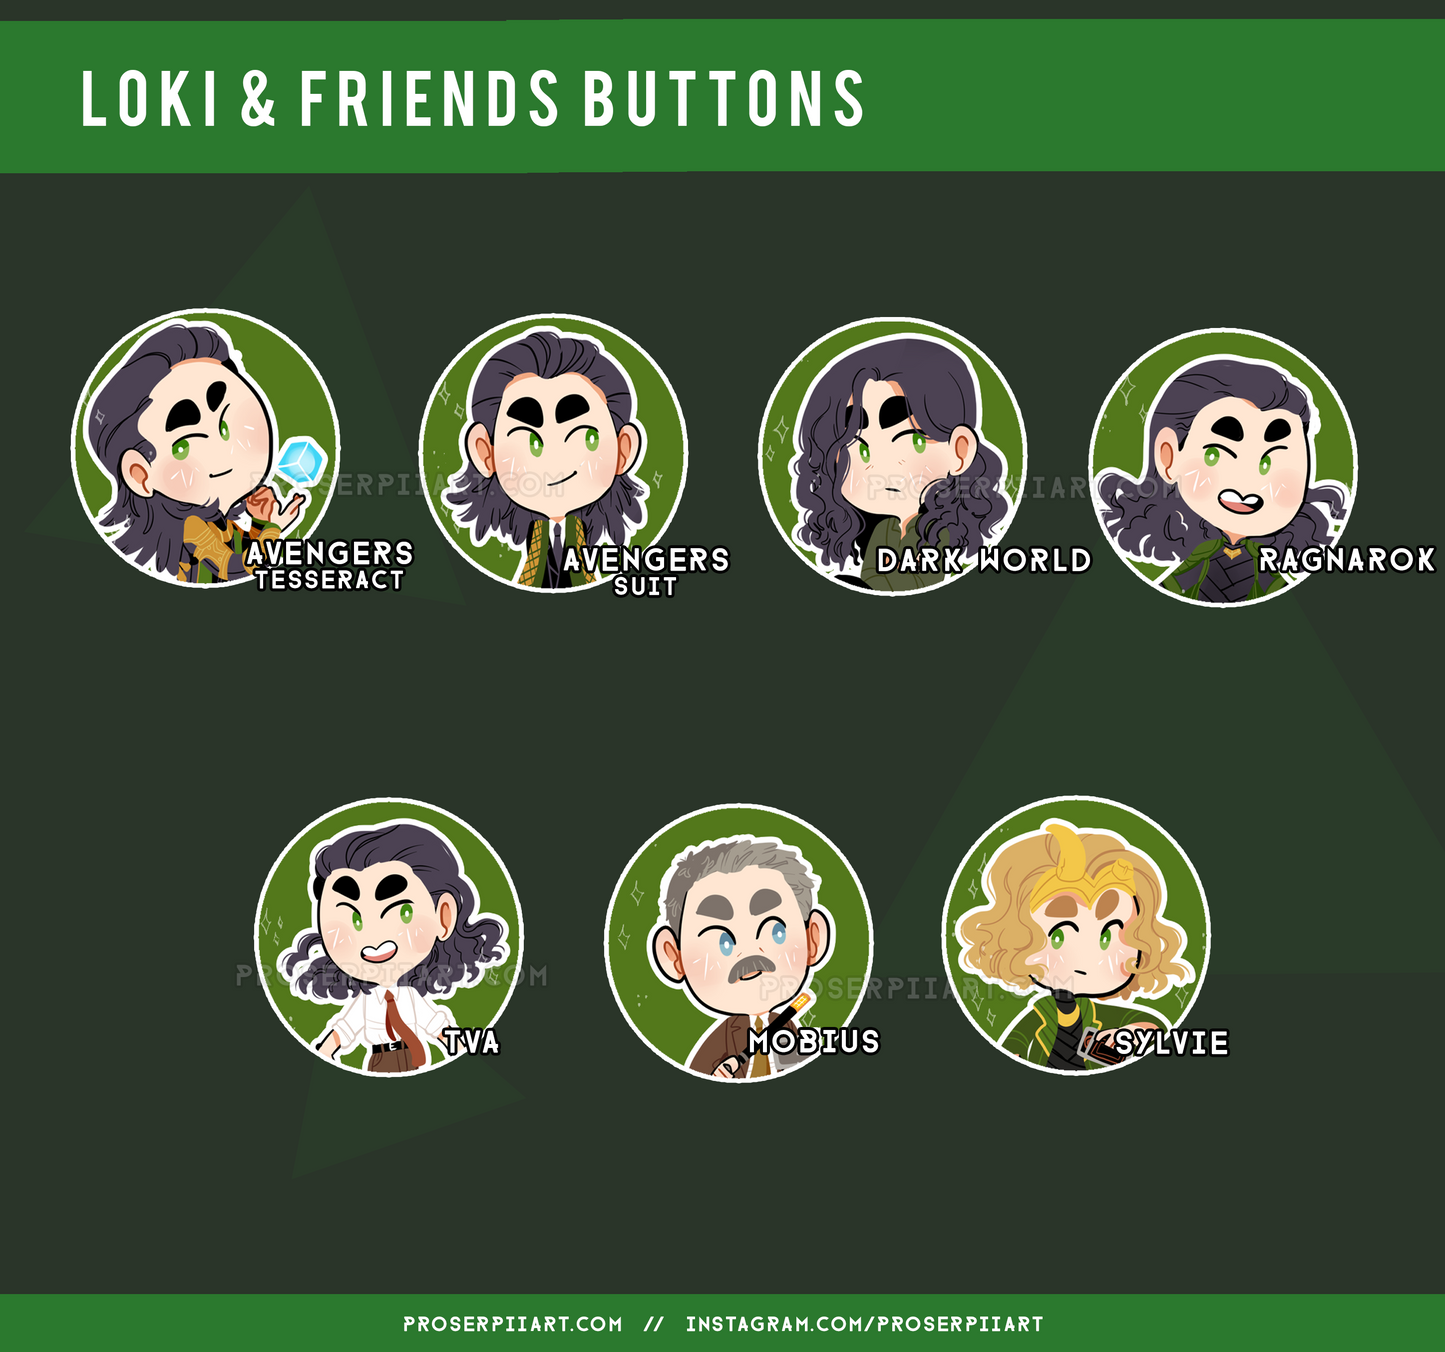 Loki & Friends Buttons